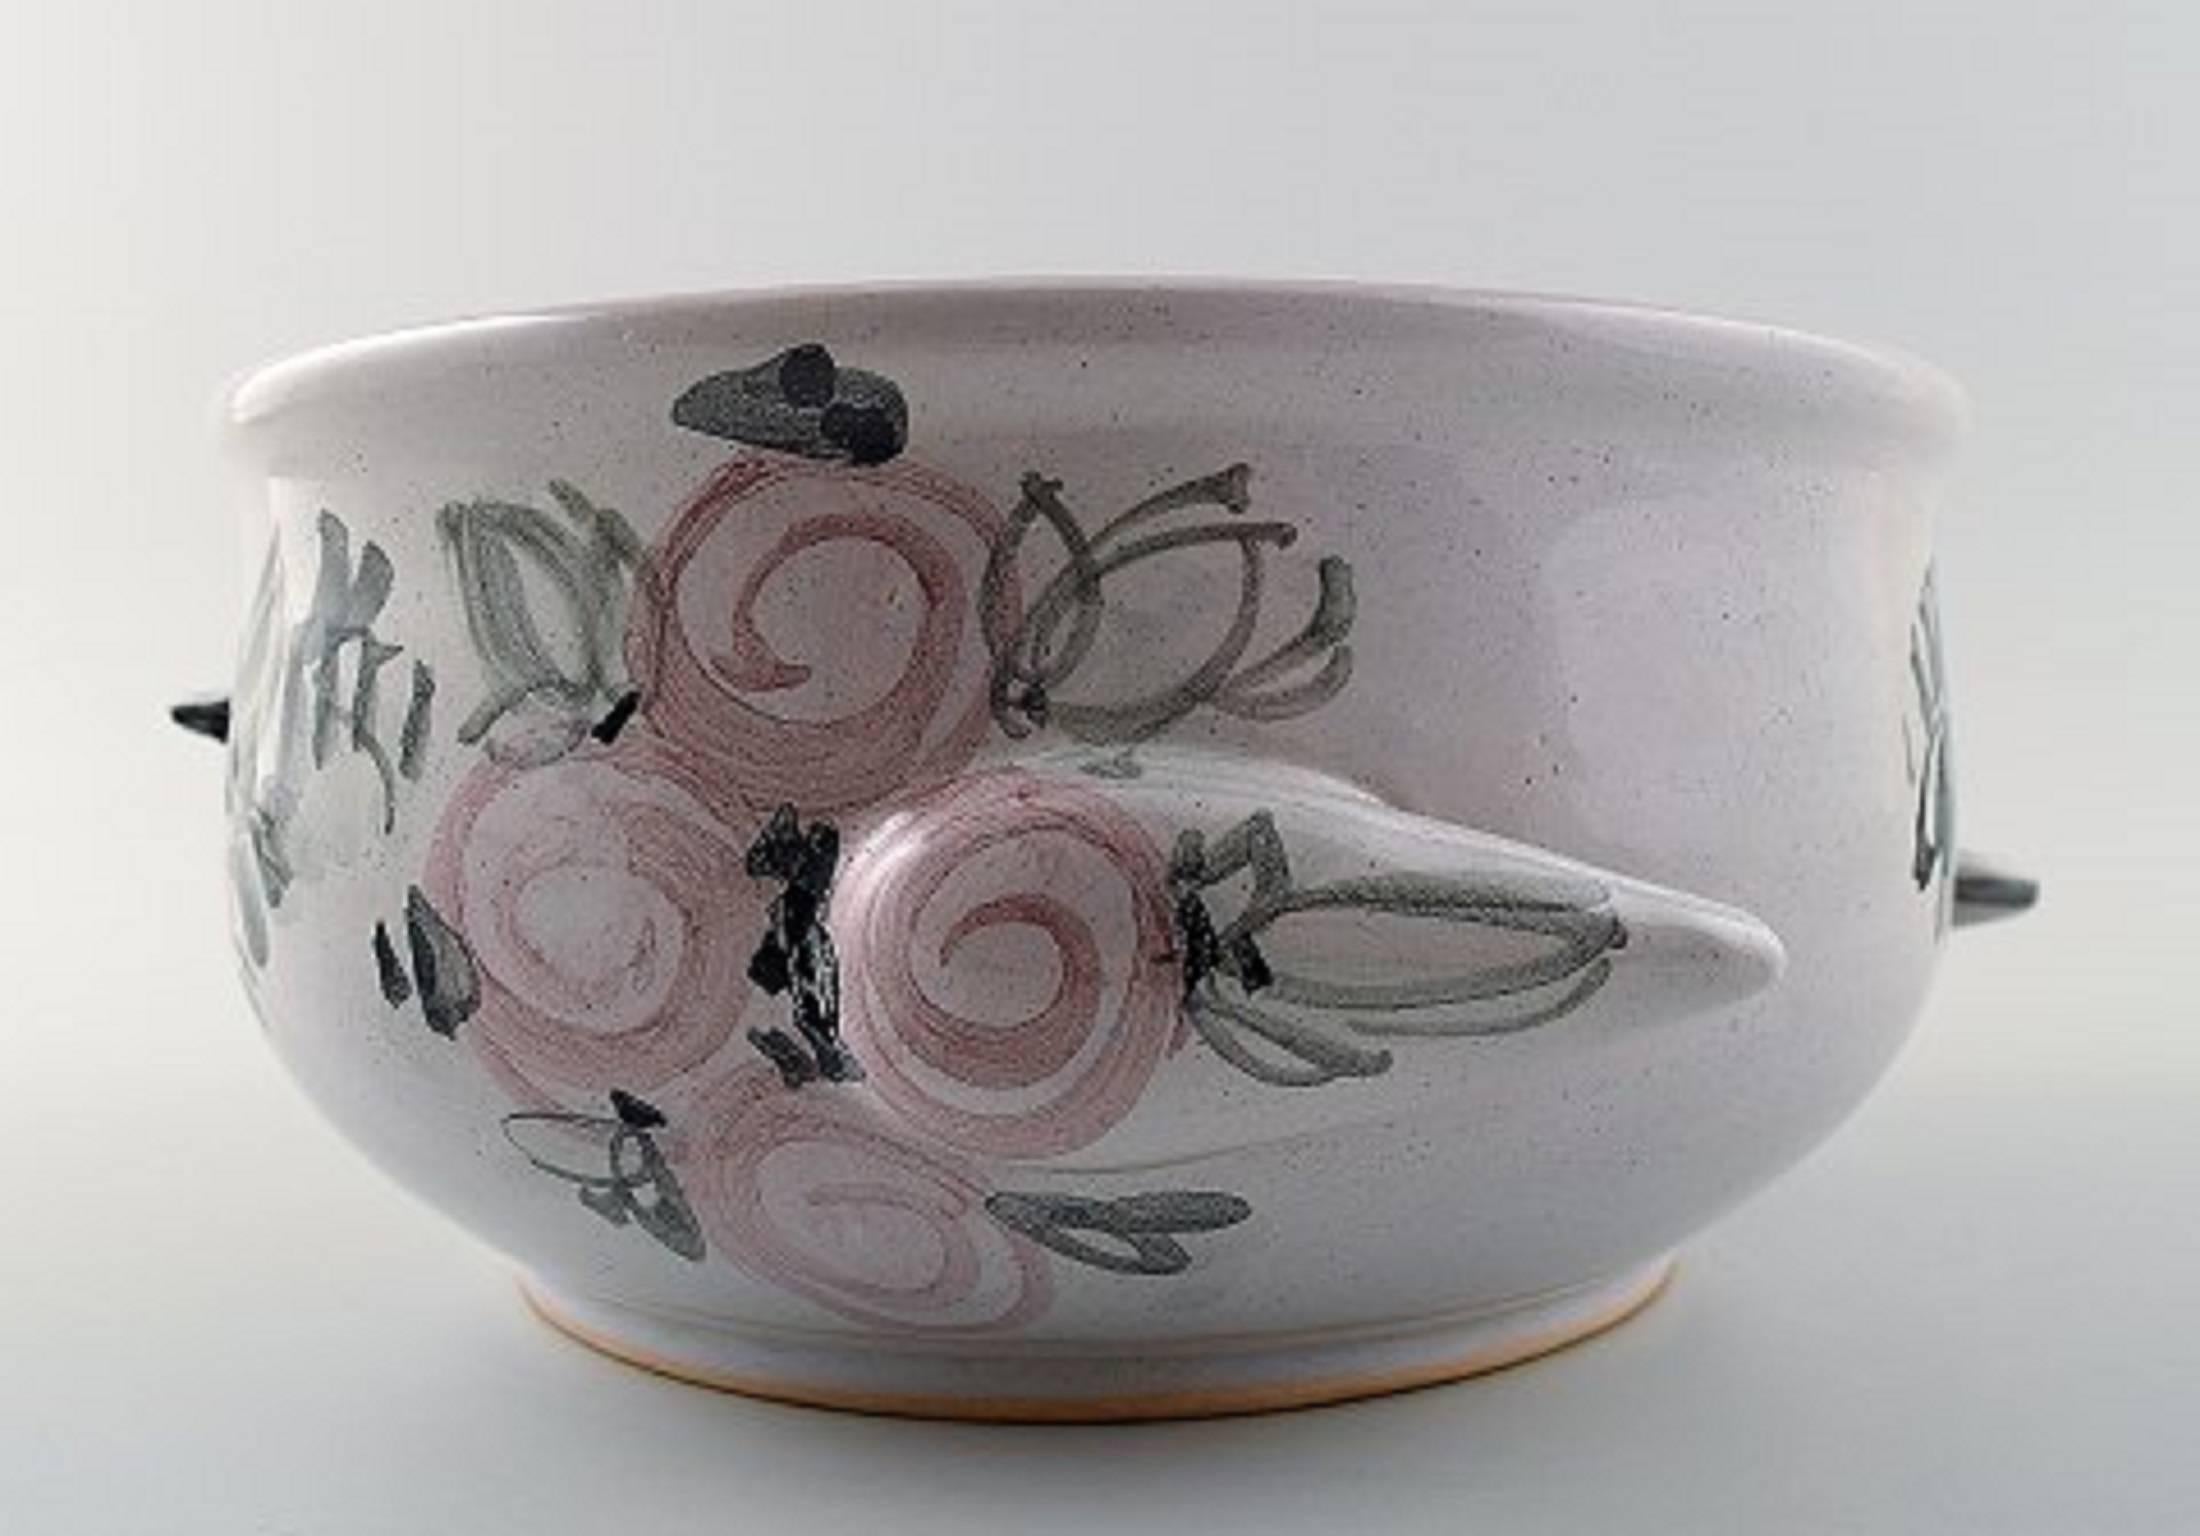 Pot de fleurs unique en céramique de Bjorn Wiinblad, glaçure rose et grise.
Mesures : 22 cm x 9,5cm. Numéro de modèle V.68.
Daté : 1976.
En parfait état.